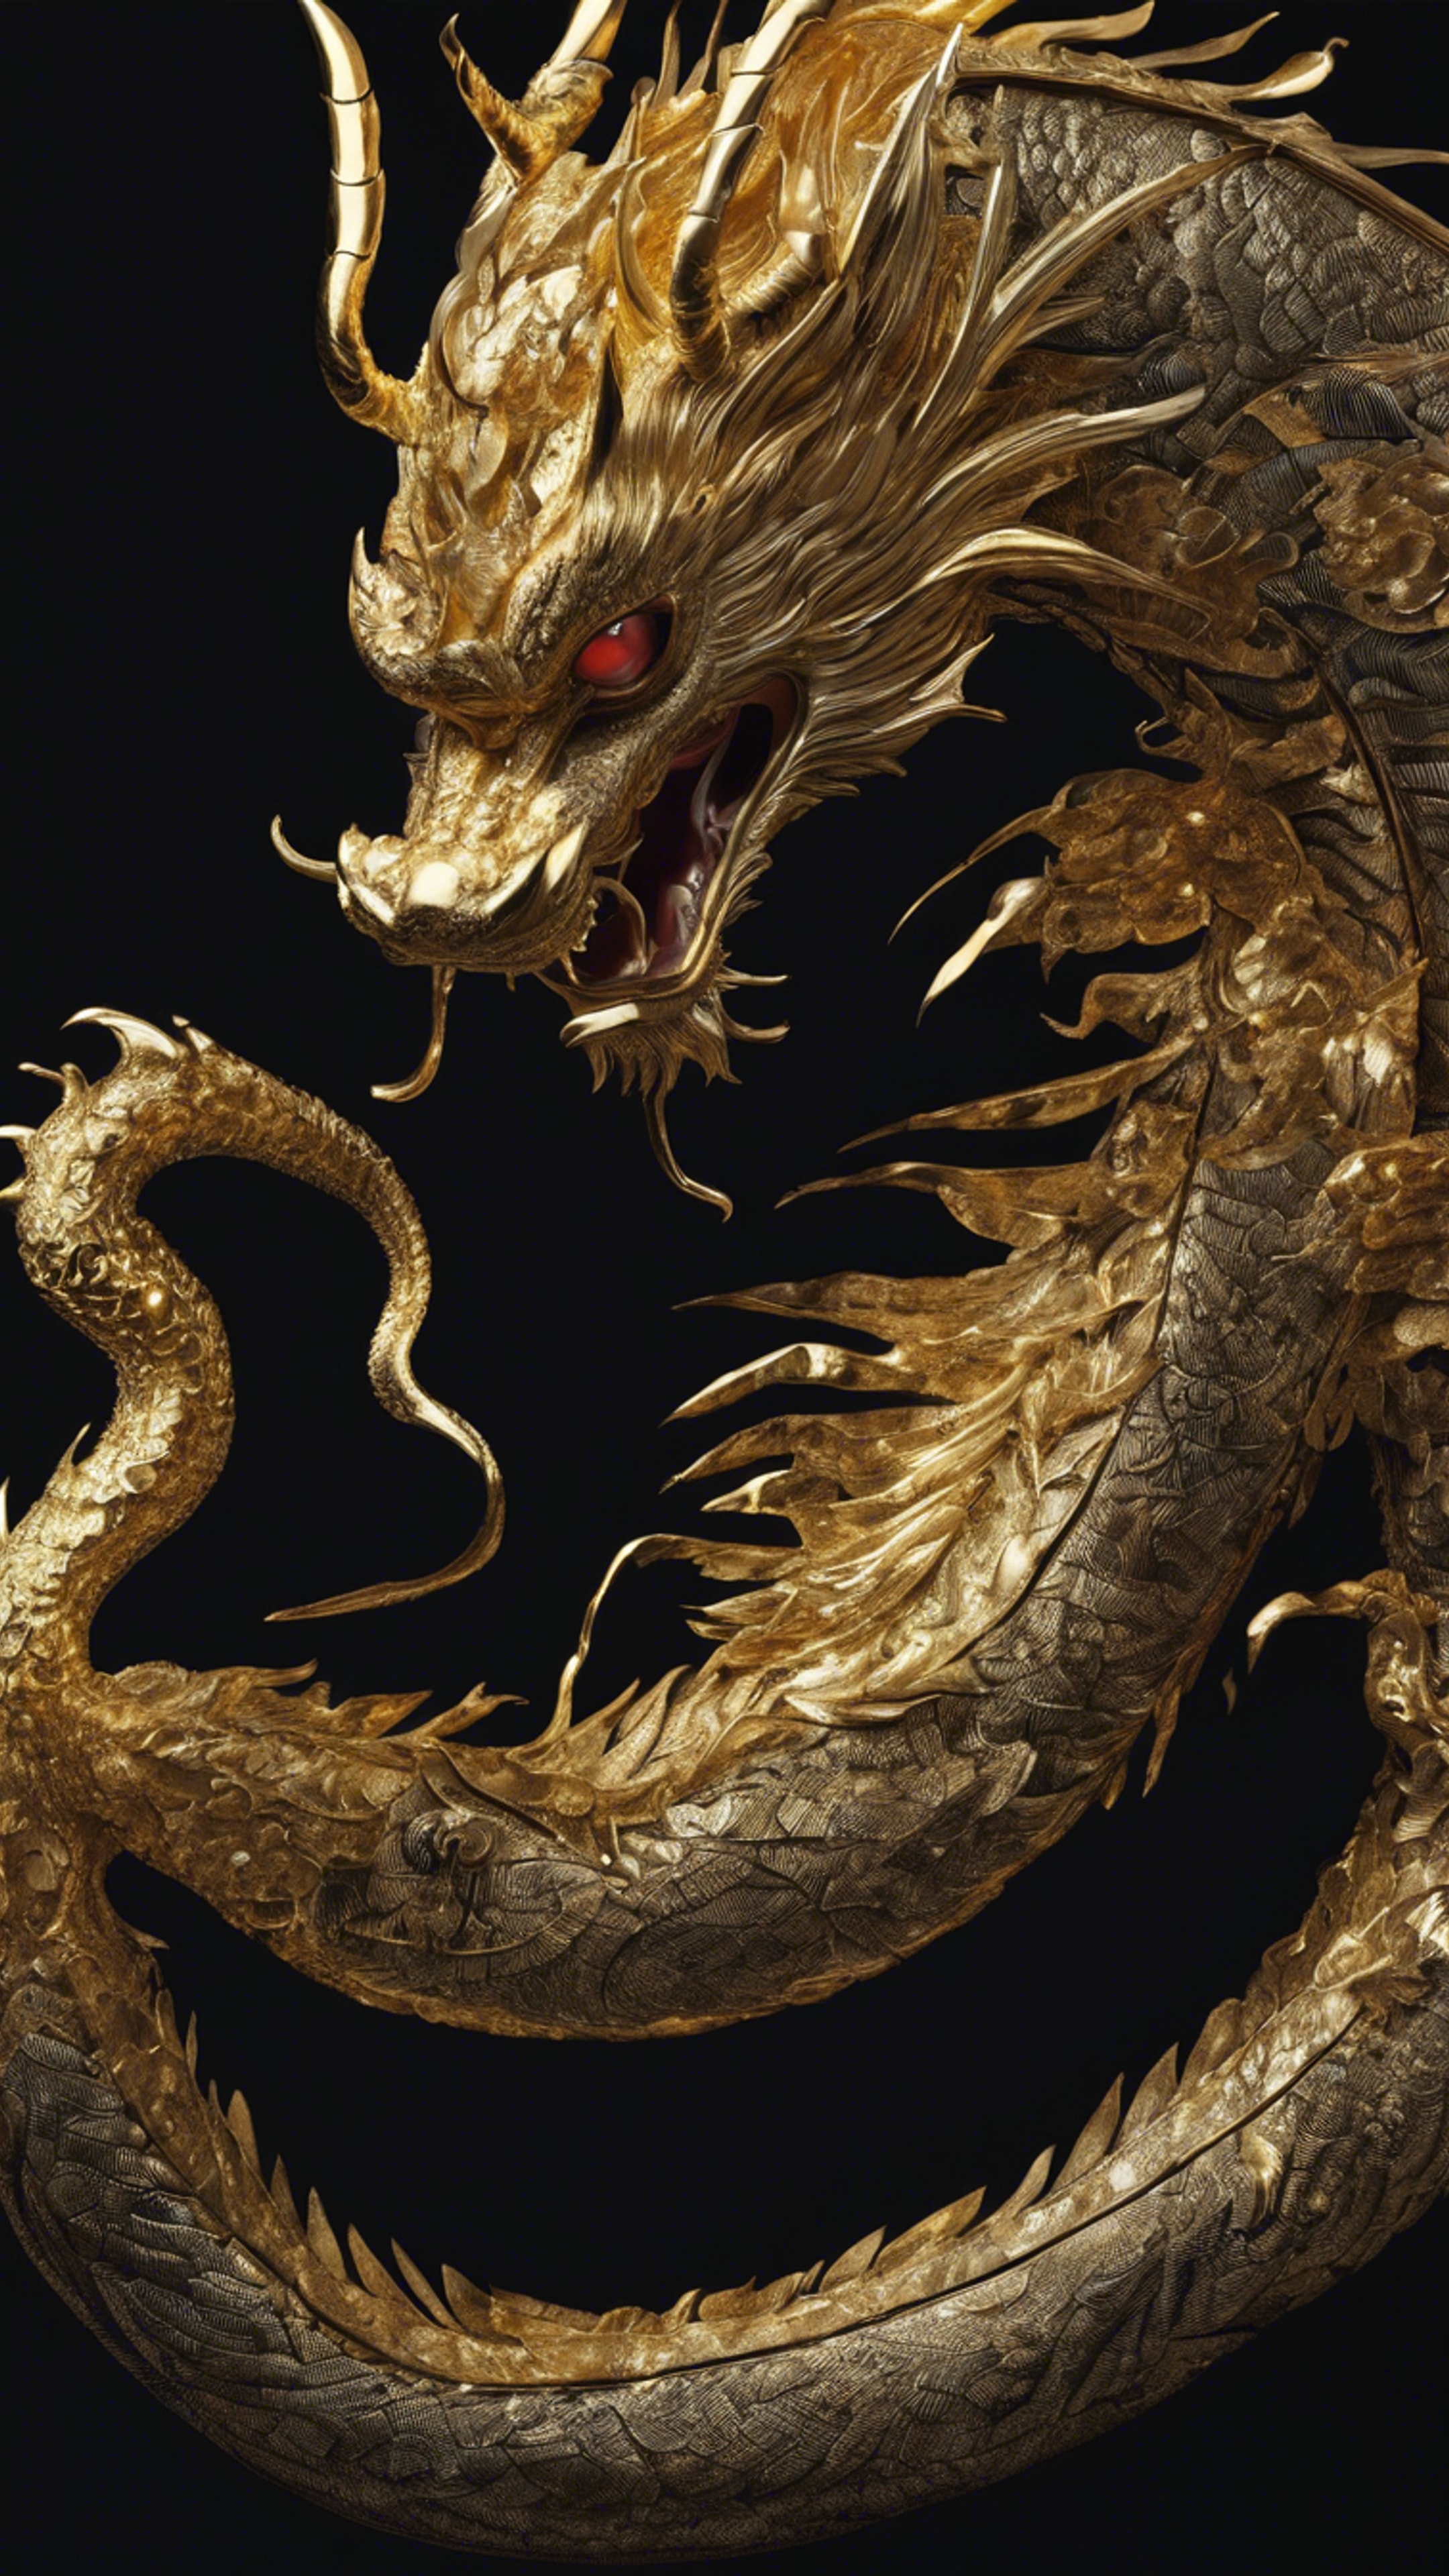 Detailed Japanese dragon rendered in gold leaf on a black background. Divar kağızı[3dbf2113e361411080c0]